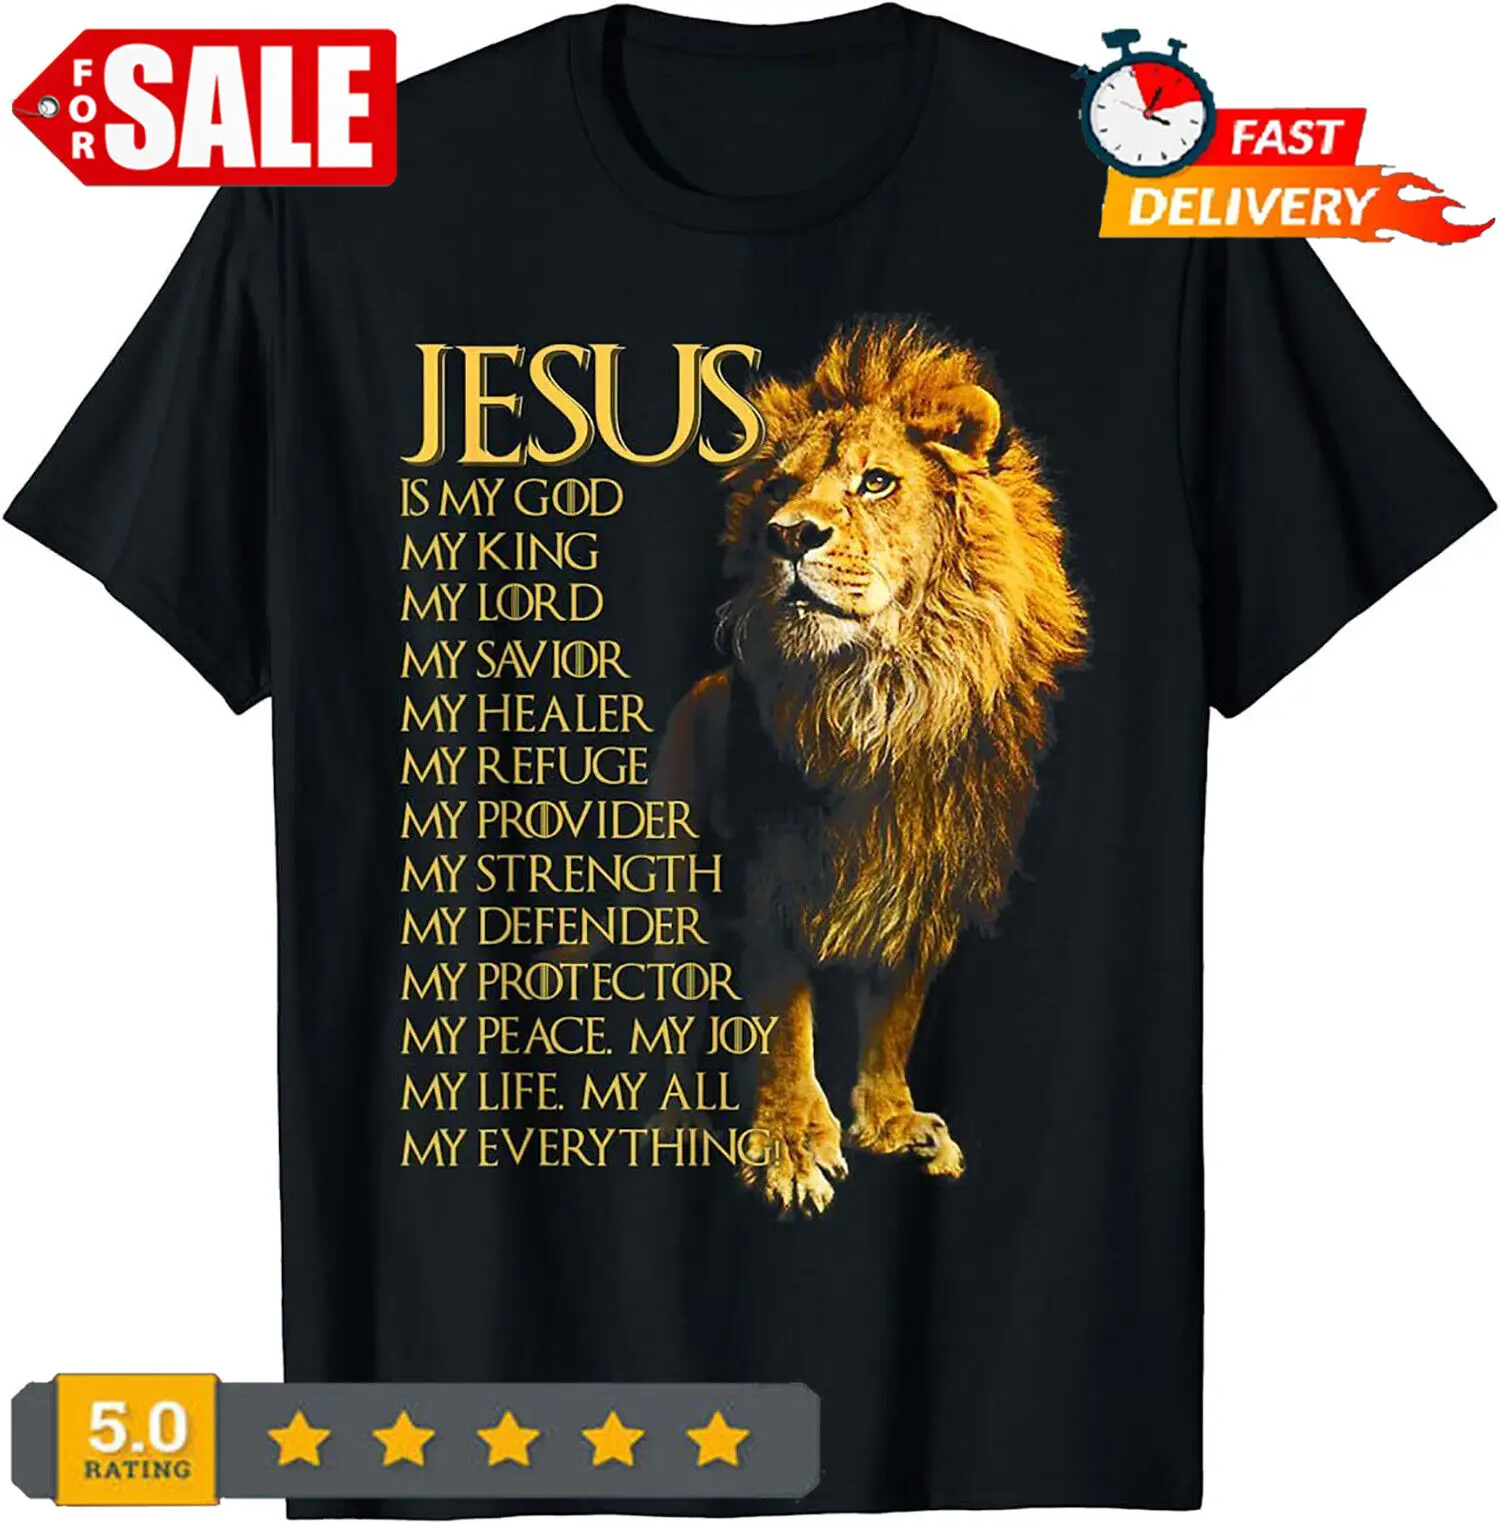 Иисус - мой Бог Царь, мой Господь, мой Спаситель, Желтый лев, христианская футболка